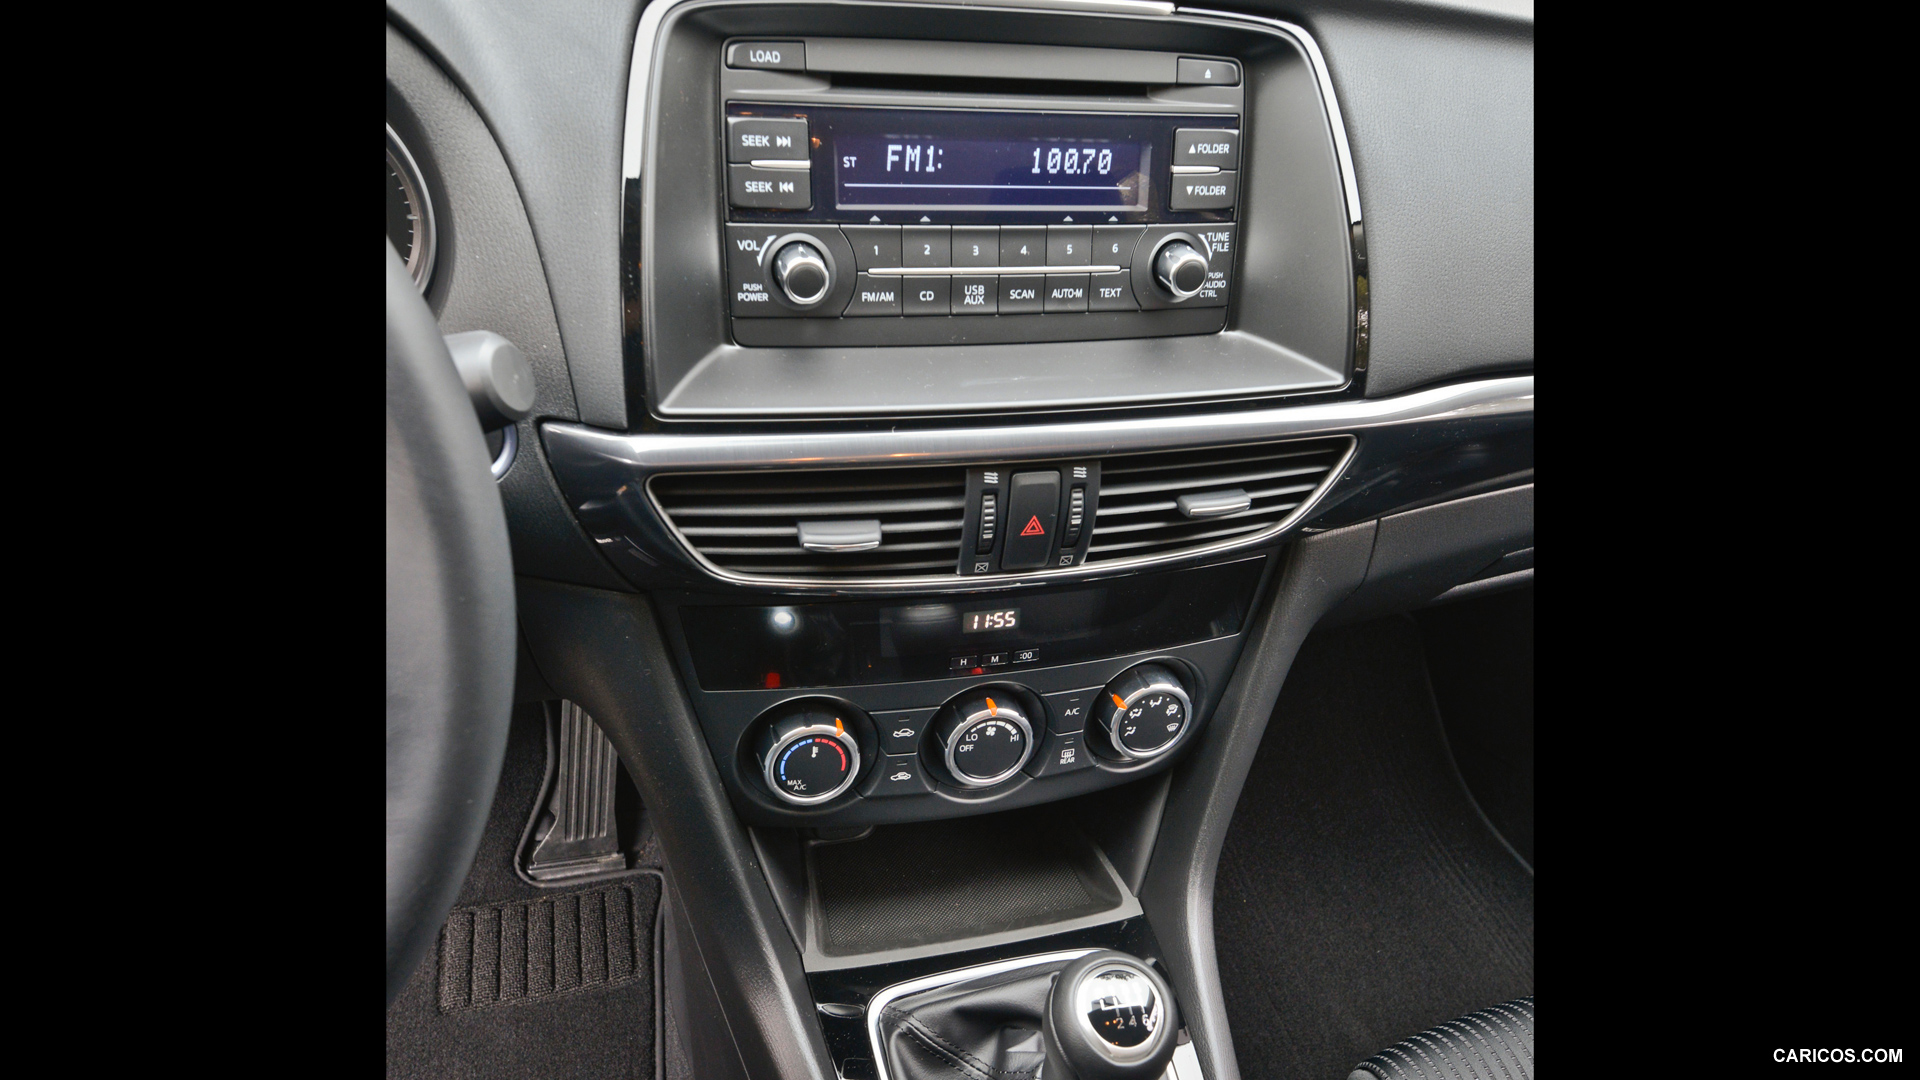 2014 Mazda6 Sport - Central Console, #96 of 179